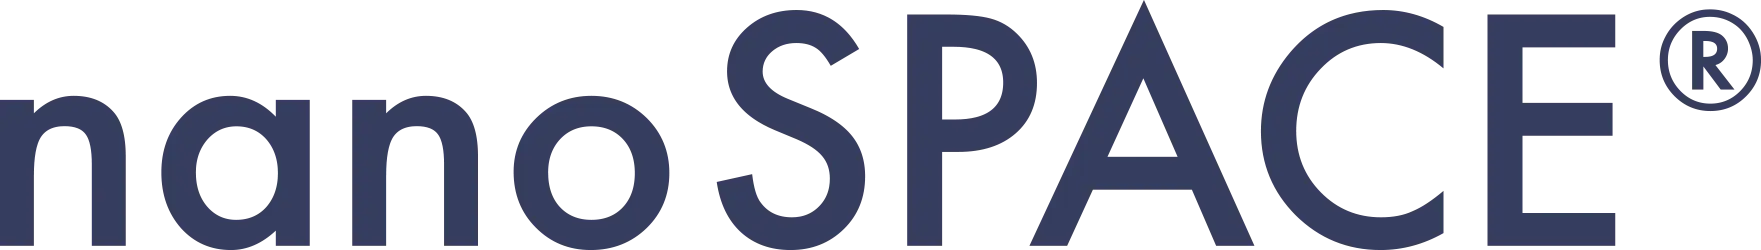 Logo nanoSPACE